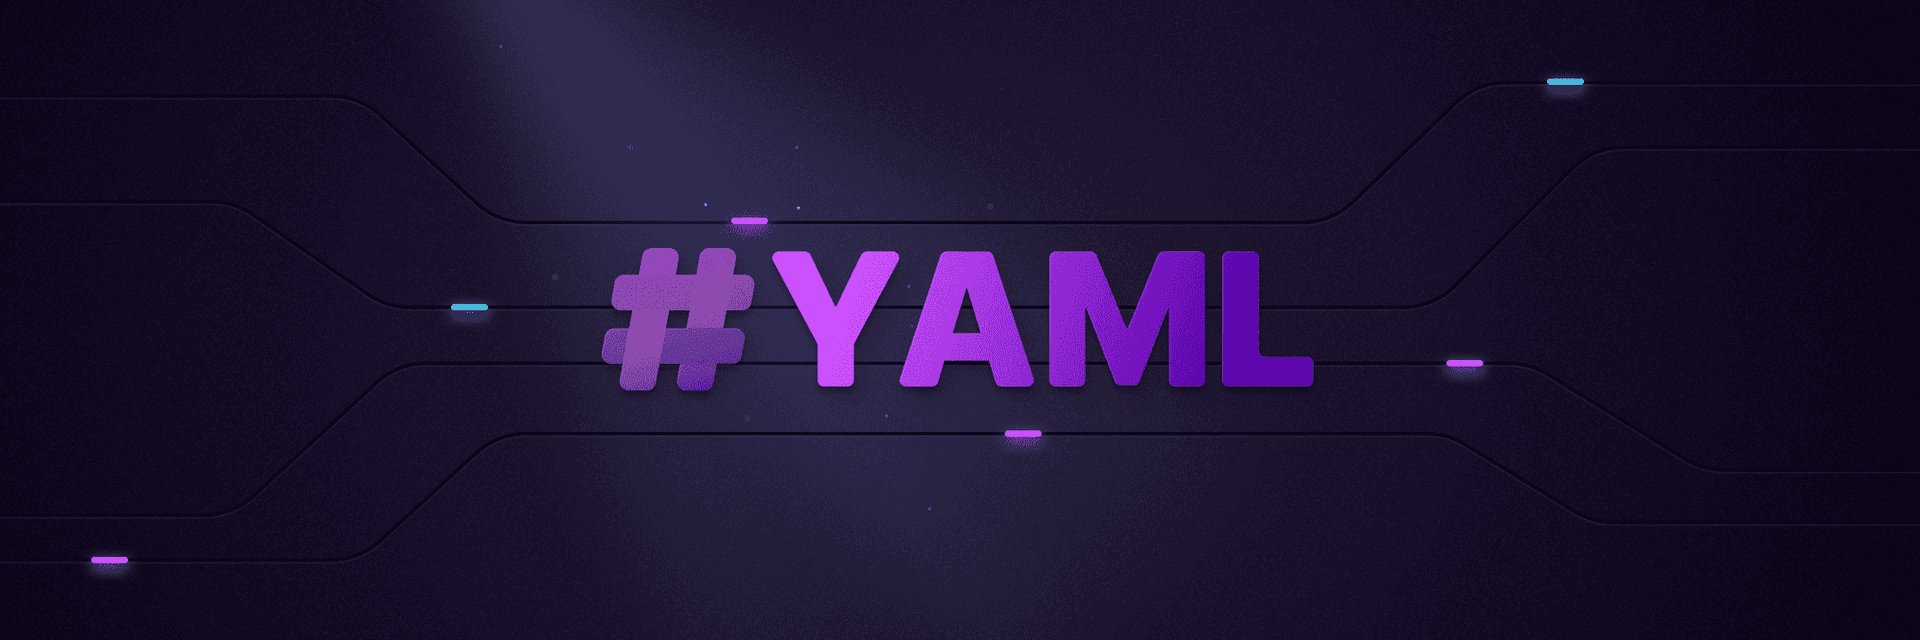 Dynamic YAML definitions